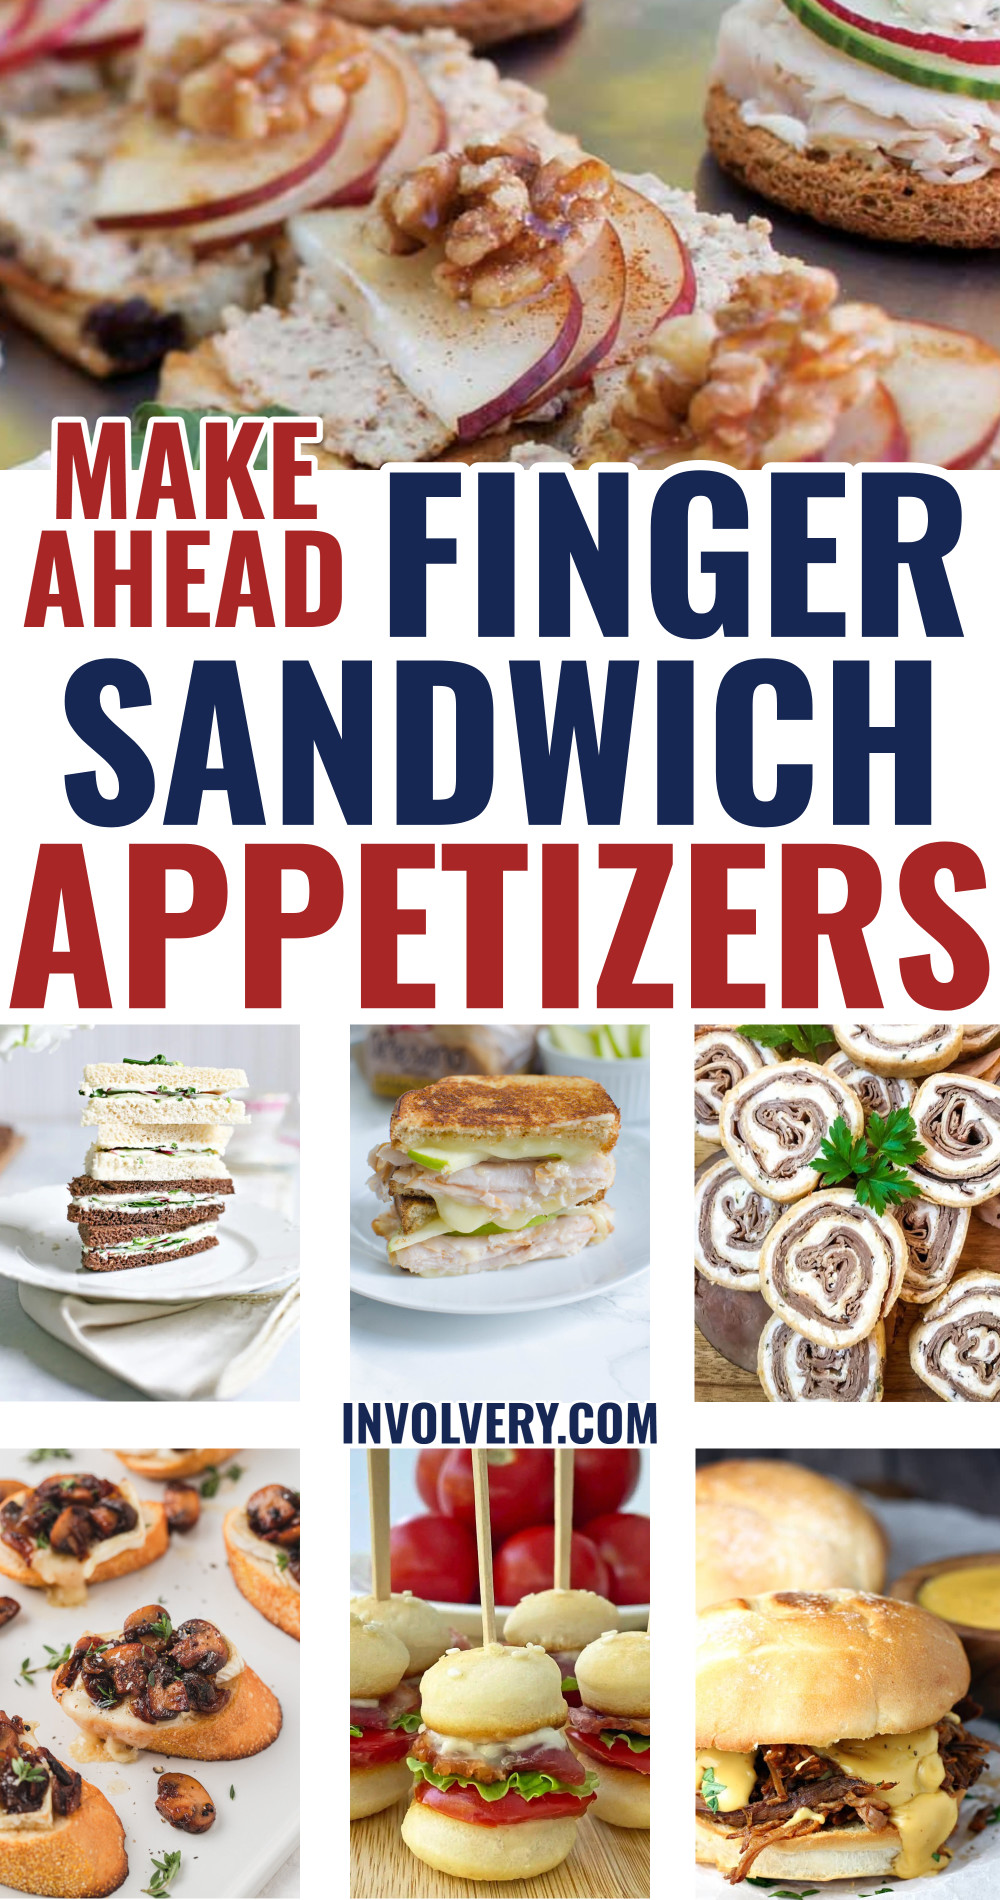 Make Ahead Finger Sandwich Appetizers